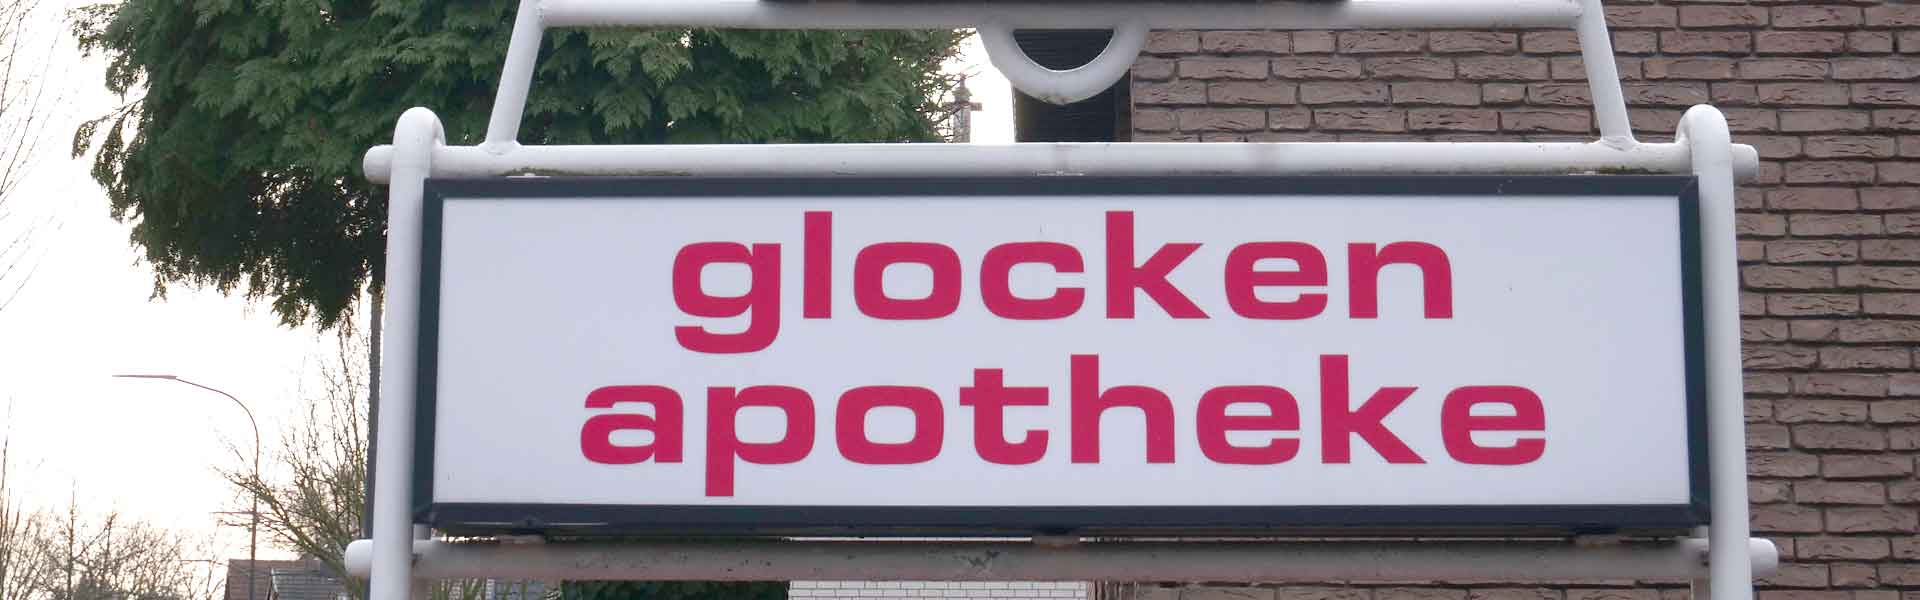 service glocken apotheke1920x600